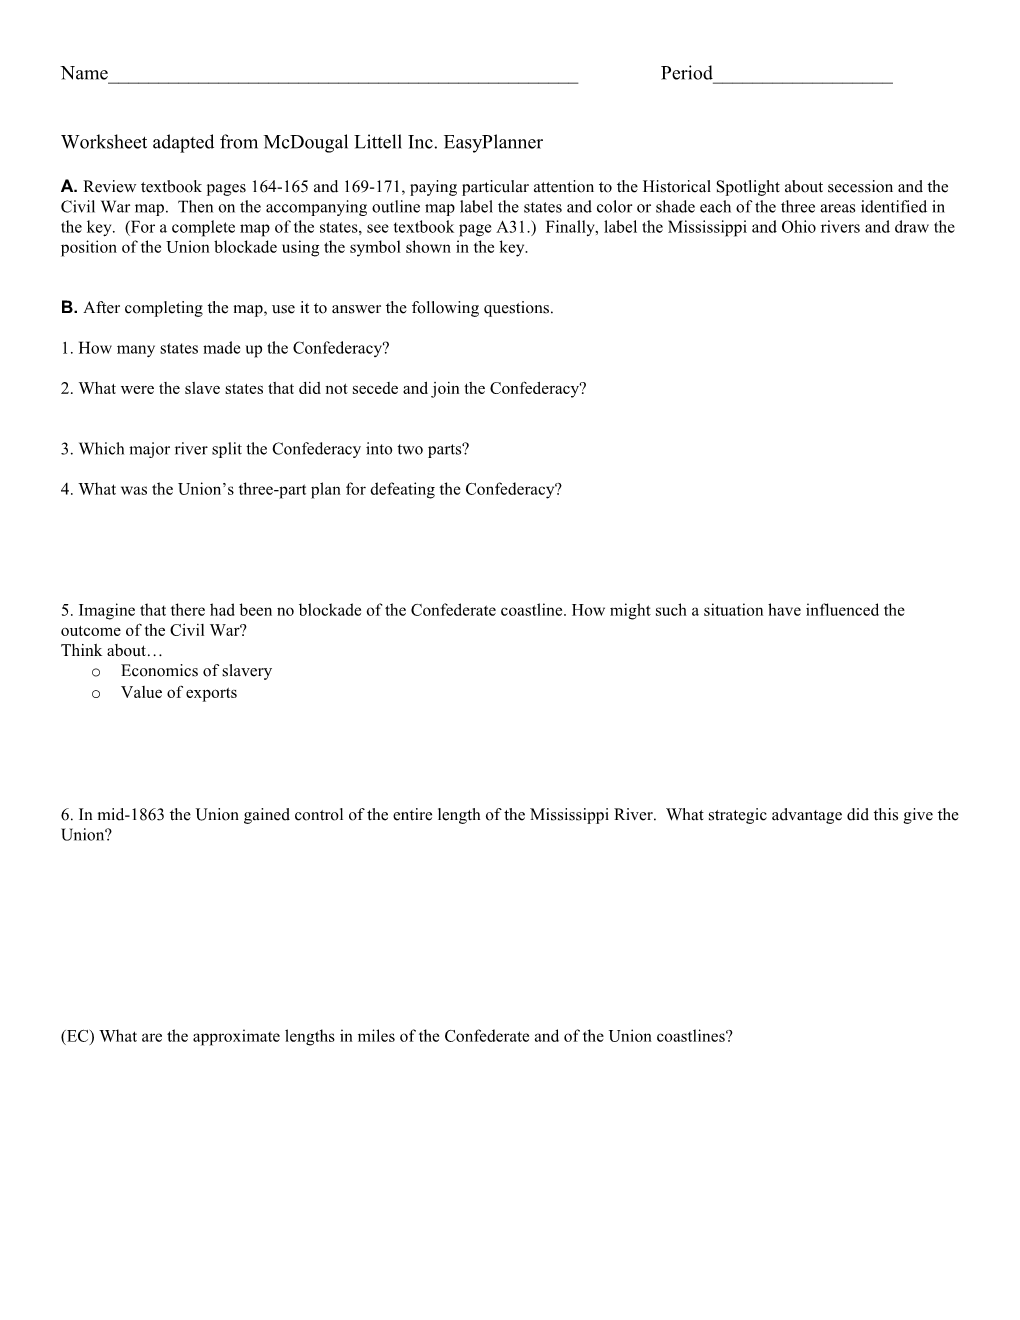 Worksheet Adapted from Mcdougal Littell Inc. Easyplanner